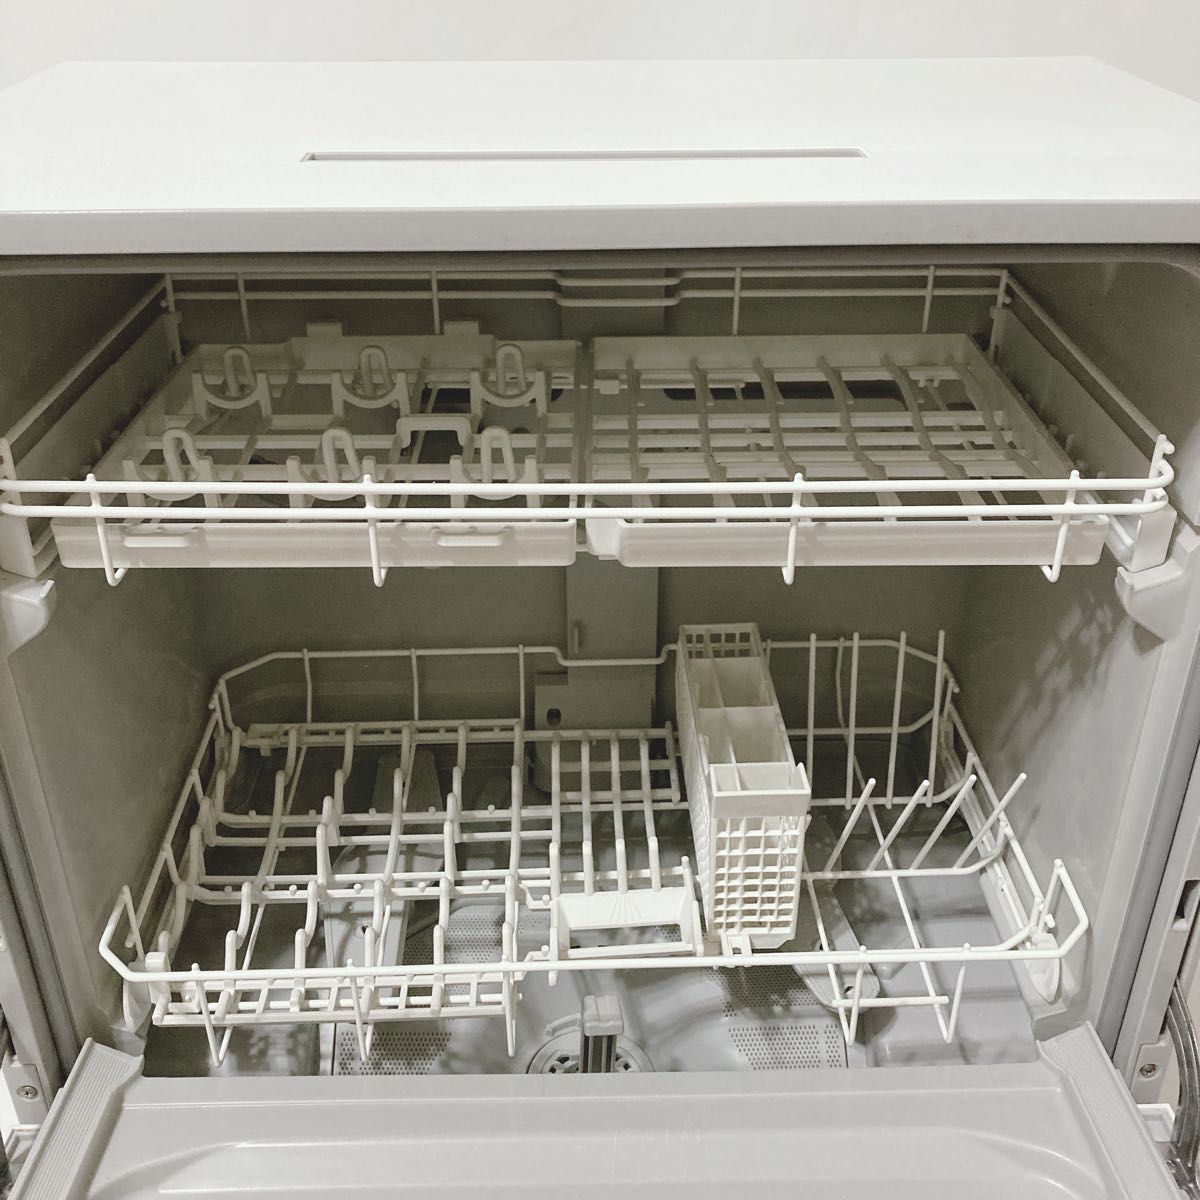 パナソニック 食器洗い乾燥機 ホワイト NP-TA3-W Panasonic